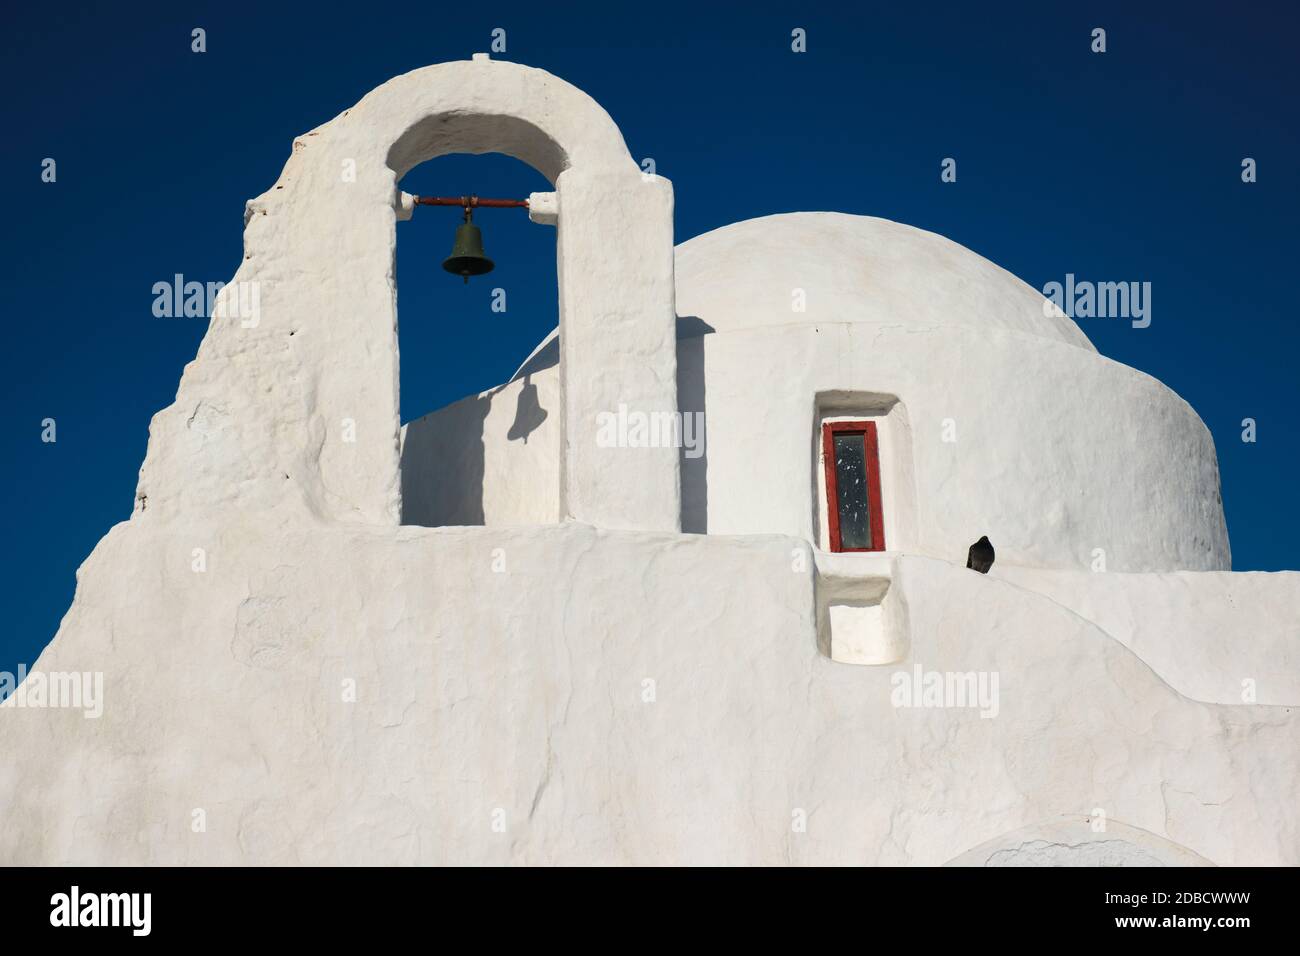 Berühmtes touristisches Wahrzeichen Griechenlands - griechisch-orthodoxe Kirche Panagia Paraportiani in der Stadt Chora auf Mykonos Insel, Griechenland bei Sonnenaufgang Stockfoto